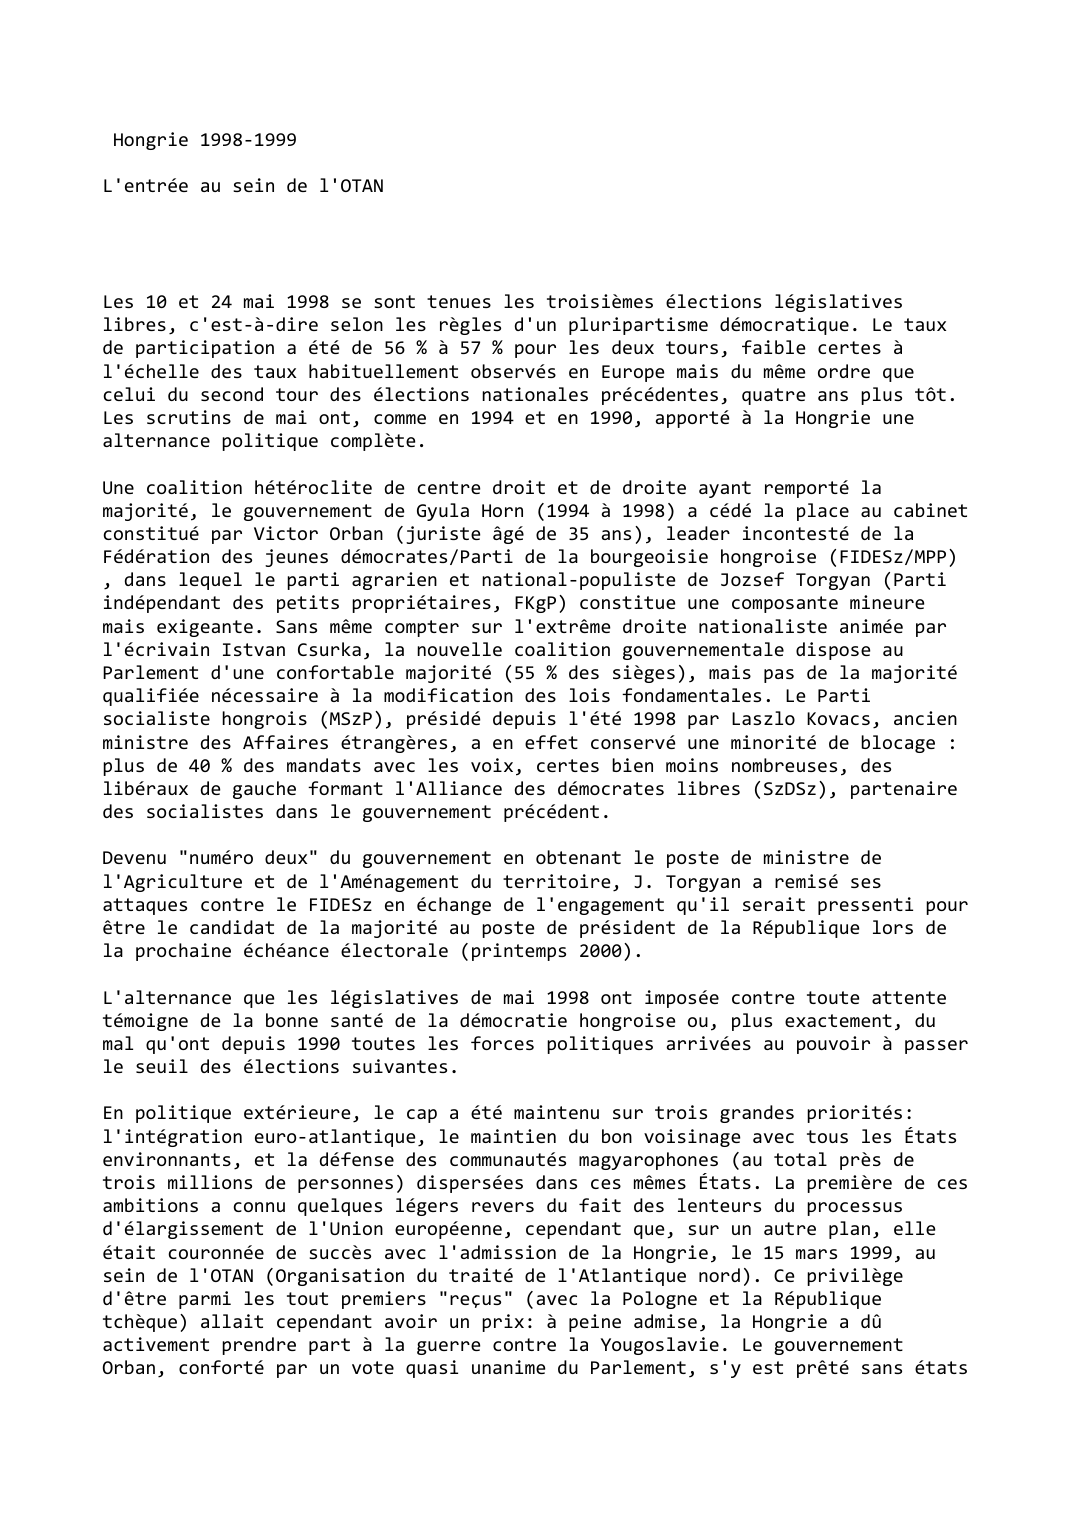 Prévisualisation du document Hongrie (1998-1999)

L'entrée au sein de l'OTAN